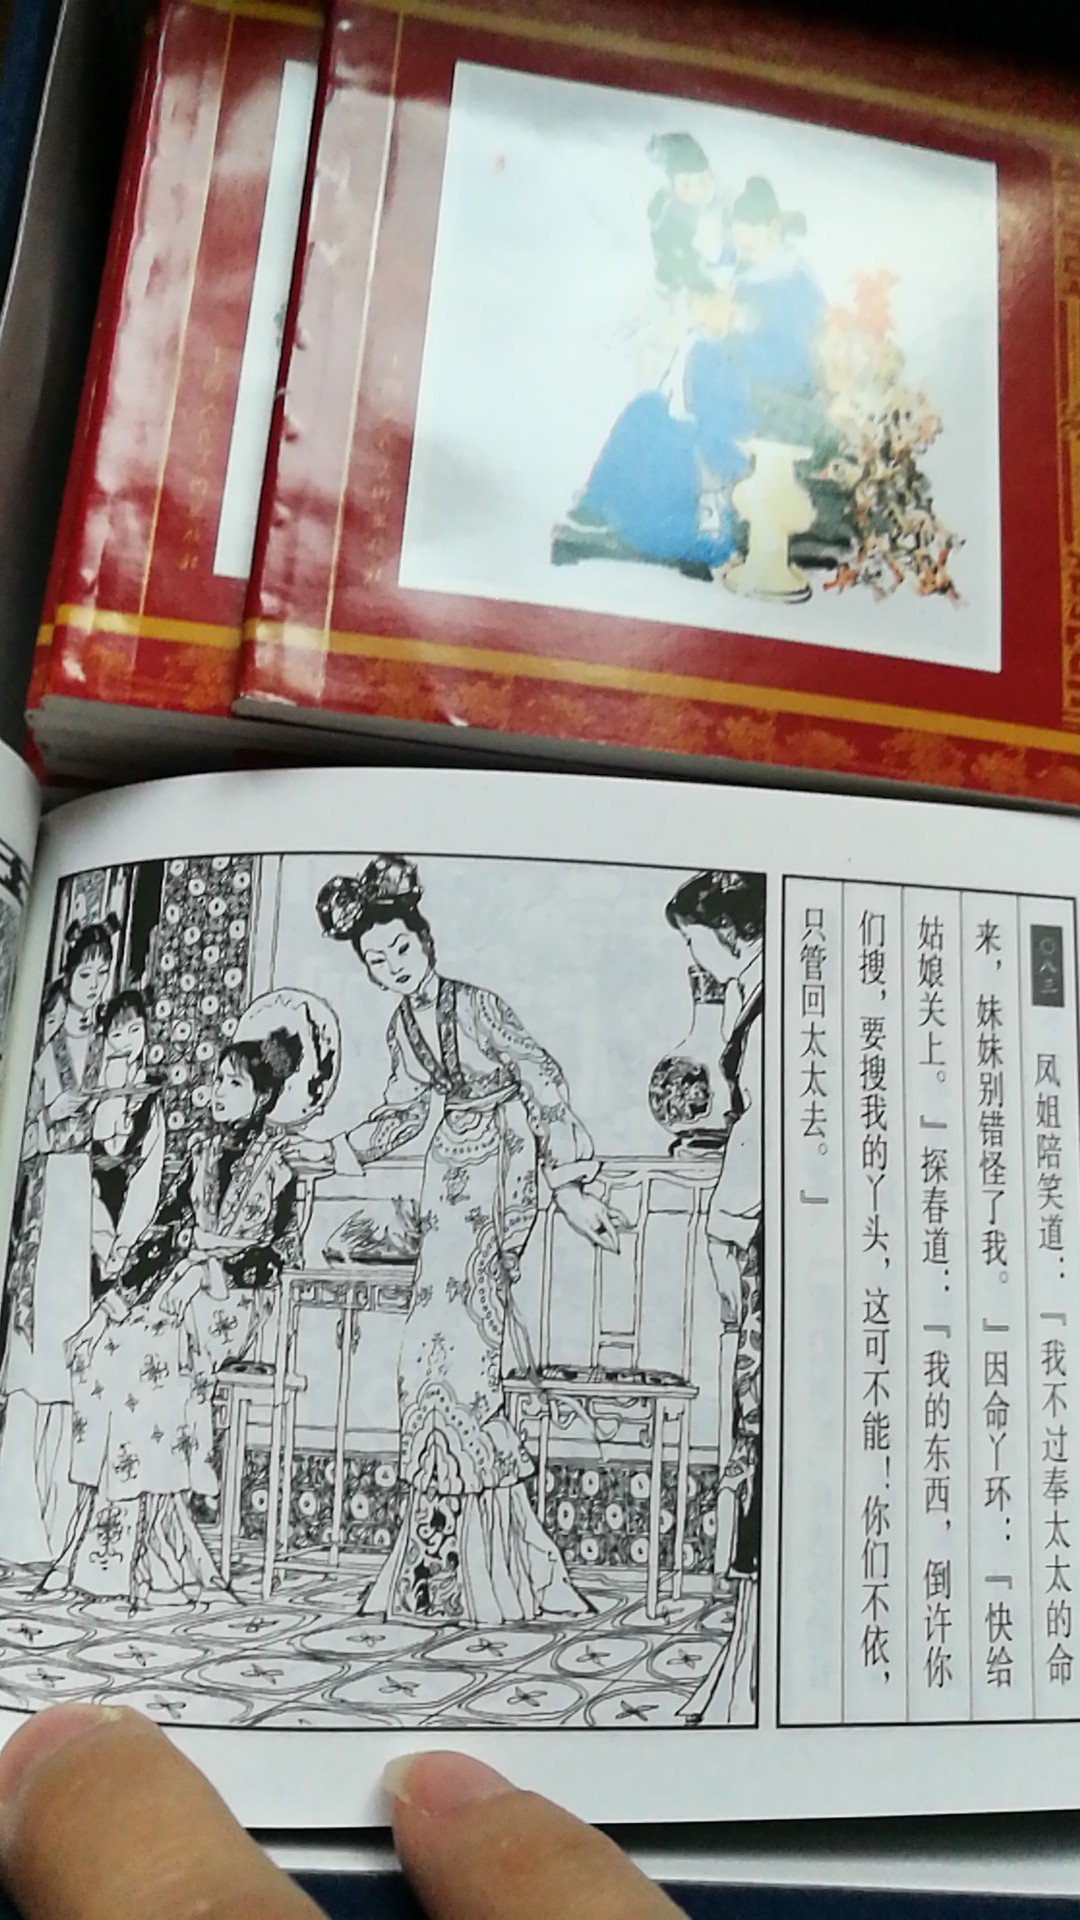 上海人民美术出版社的，画特别细致，古香古色，我上小学的时候妈妈给买过这个版本的，上学～搬家都不全了，有幸看到同版本的收购一套，满满的童年记忆